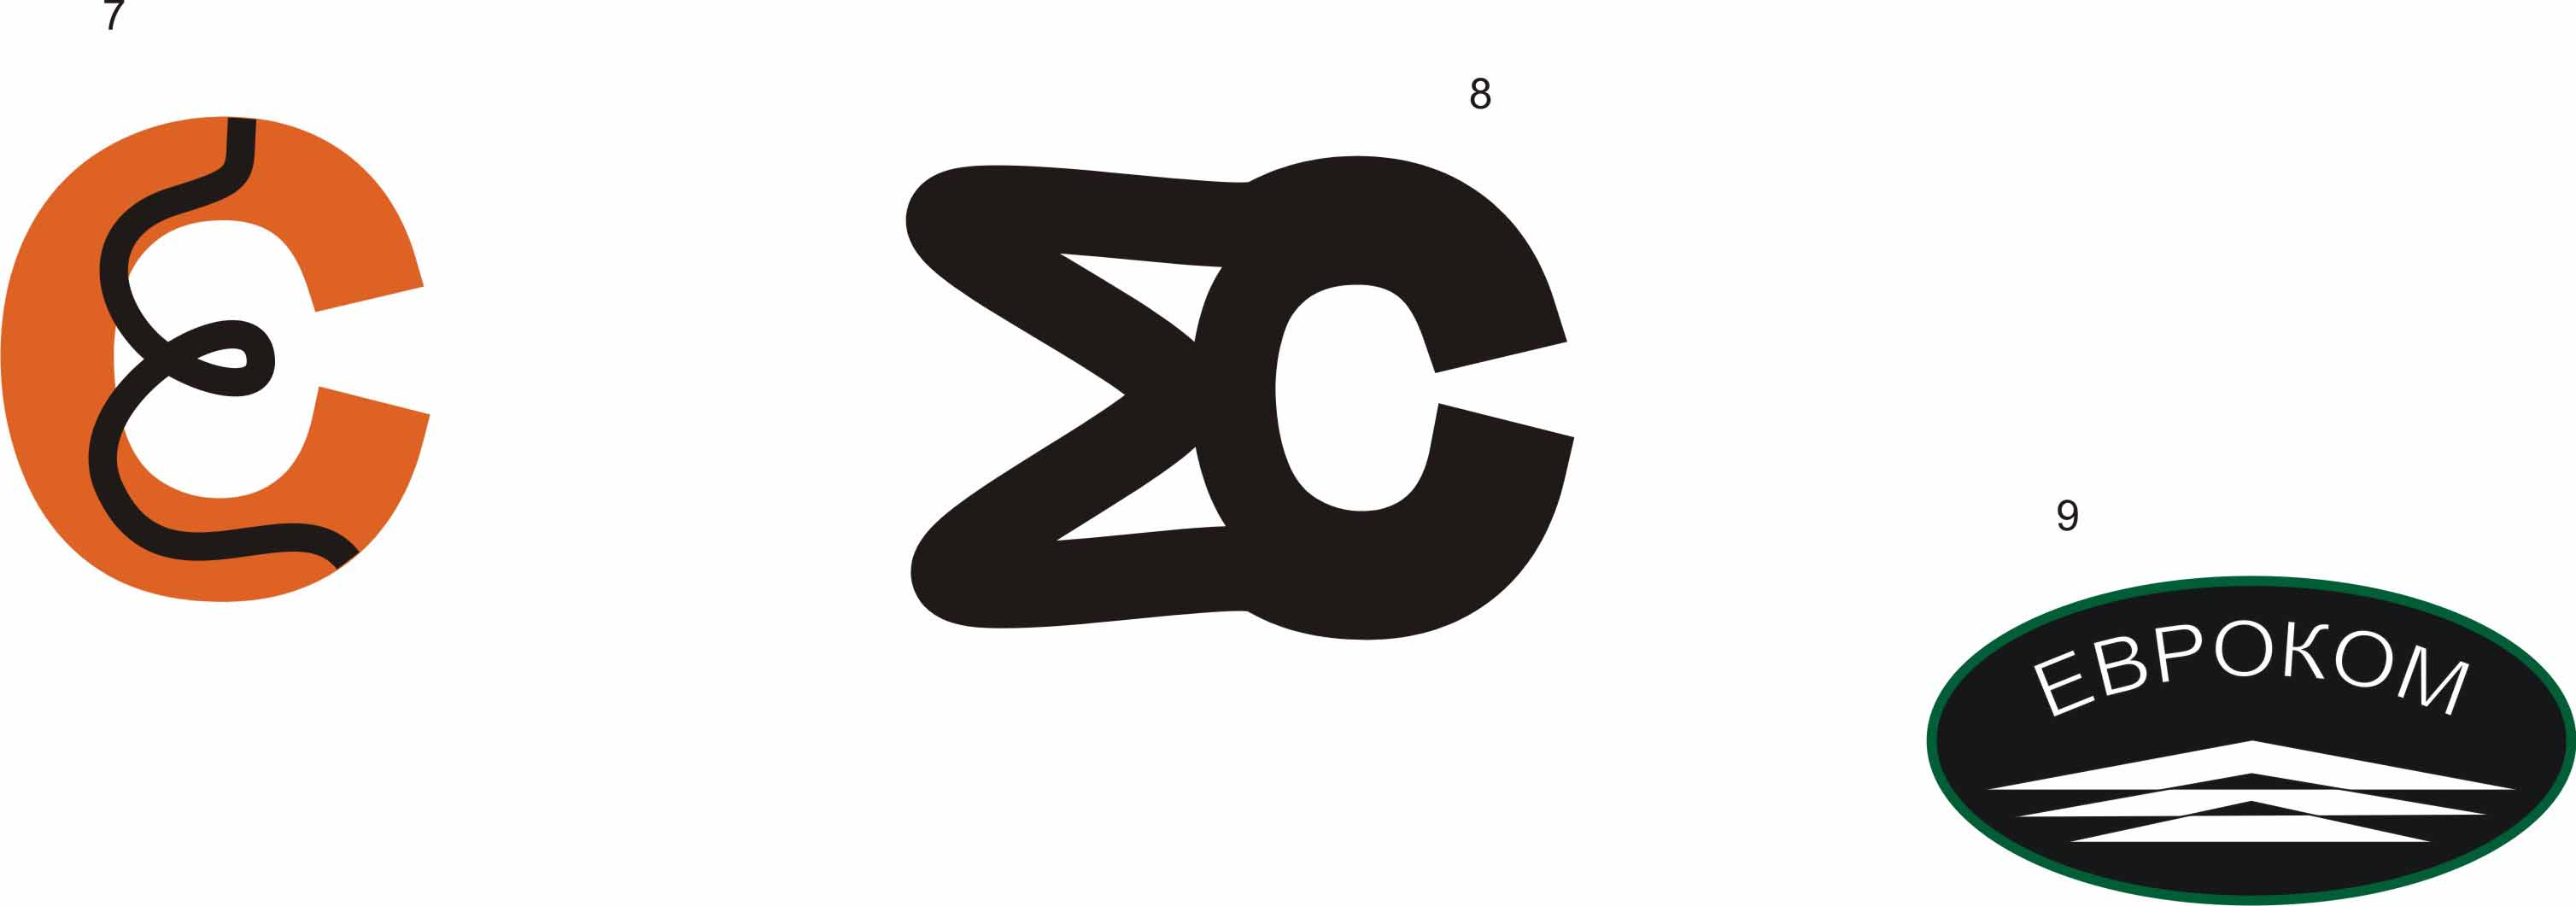 Логотипы Евроком 2